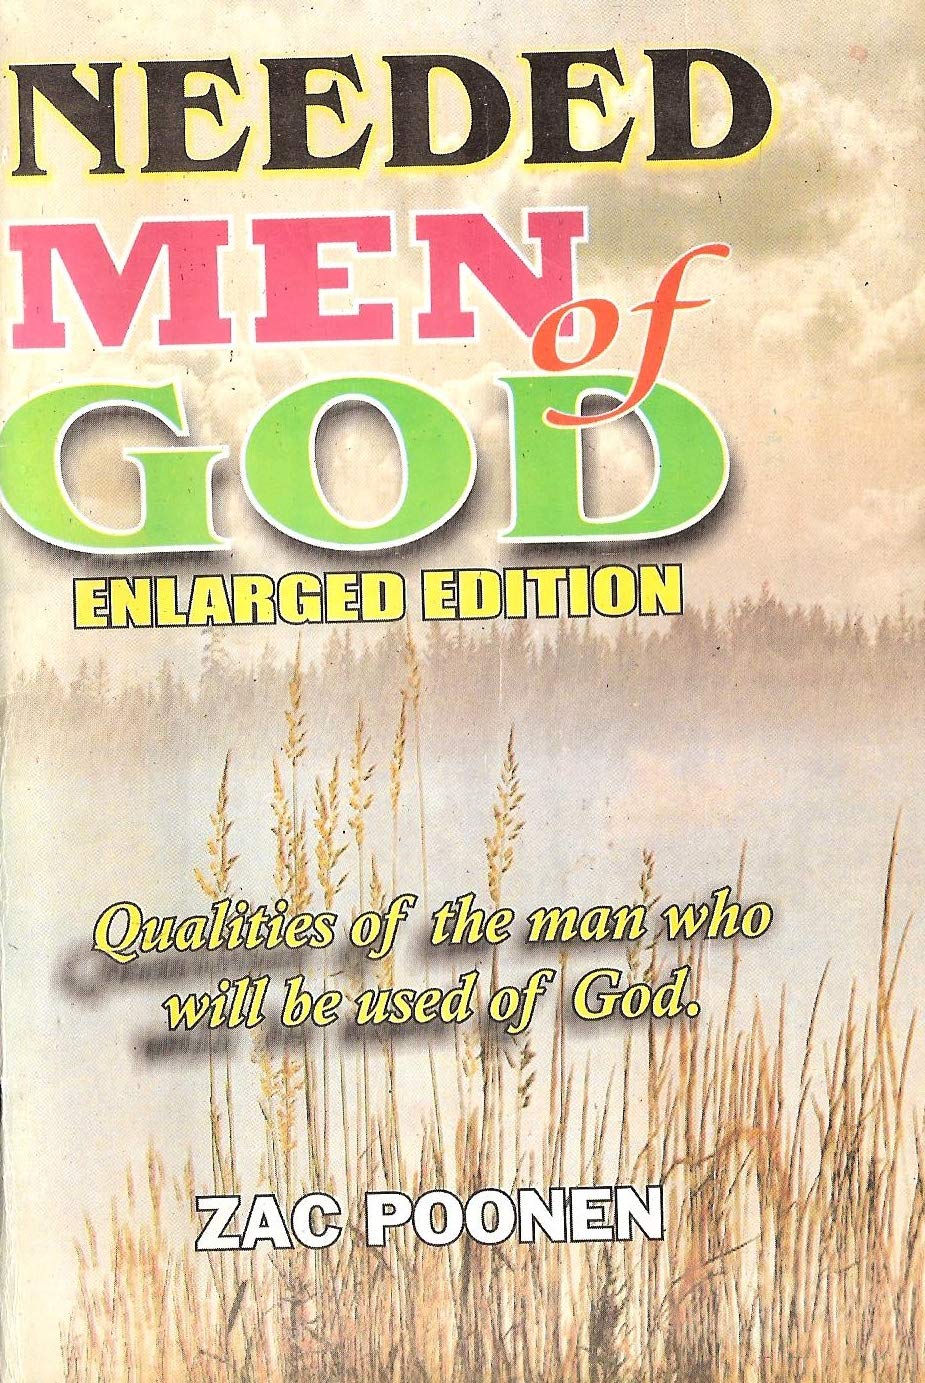 DOWNLOAD PDF: Needed Men of God by Zac Poonen 22